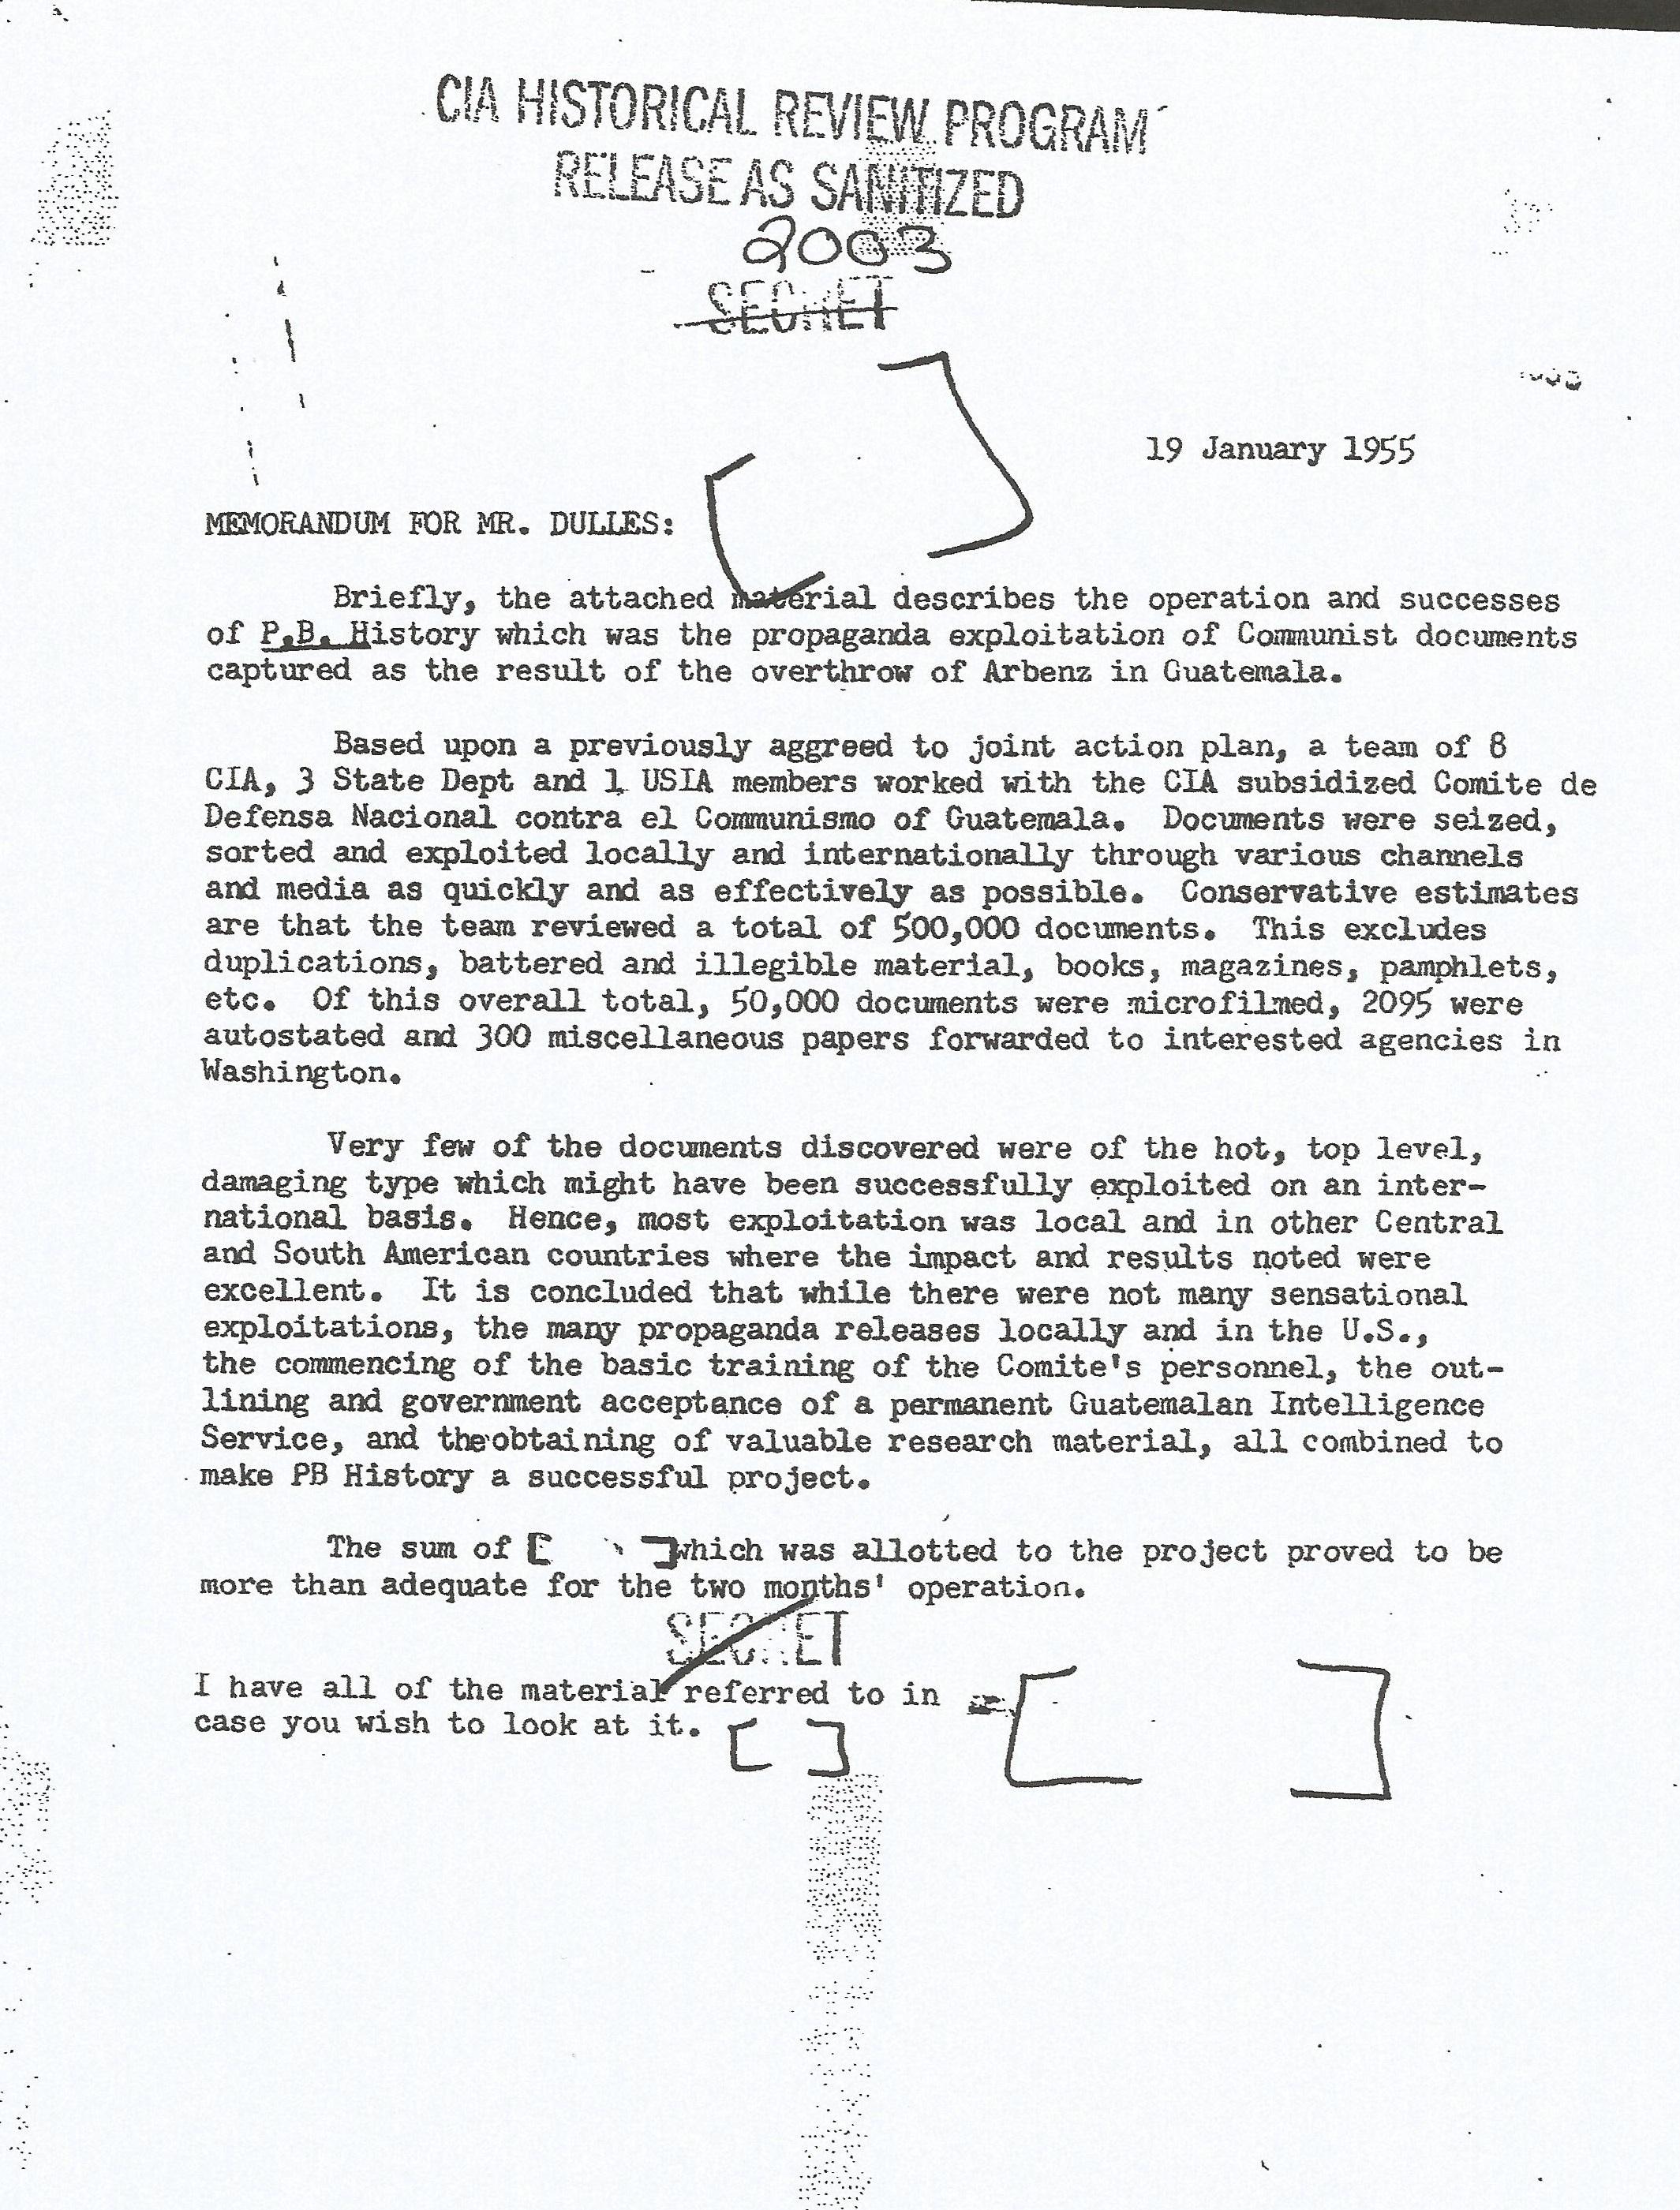 Memorándum que el equipo PBHISTORY en Guatemala, liderado por la CIA, envió al Secretario de Estado de Estados Unidos, John Foster Dulles (1888-1959) el 19 de enero de 1955. Explica una operación secreta tras el derrocamiento de Jacobo Arbenz.